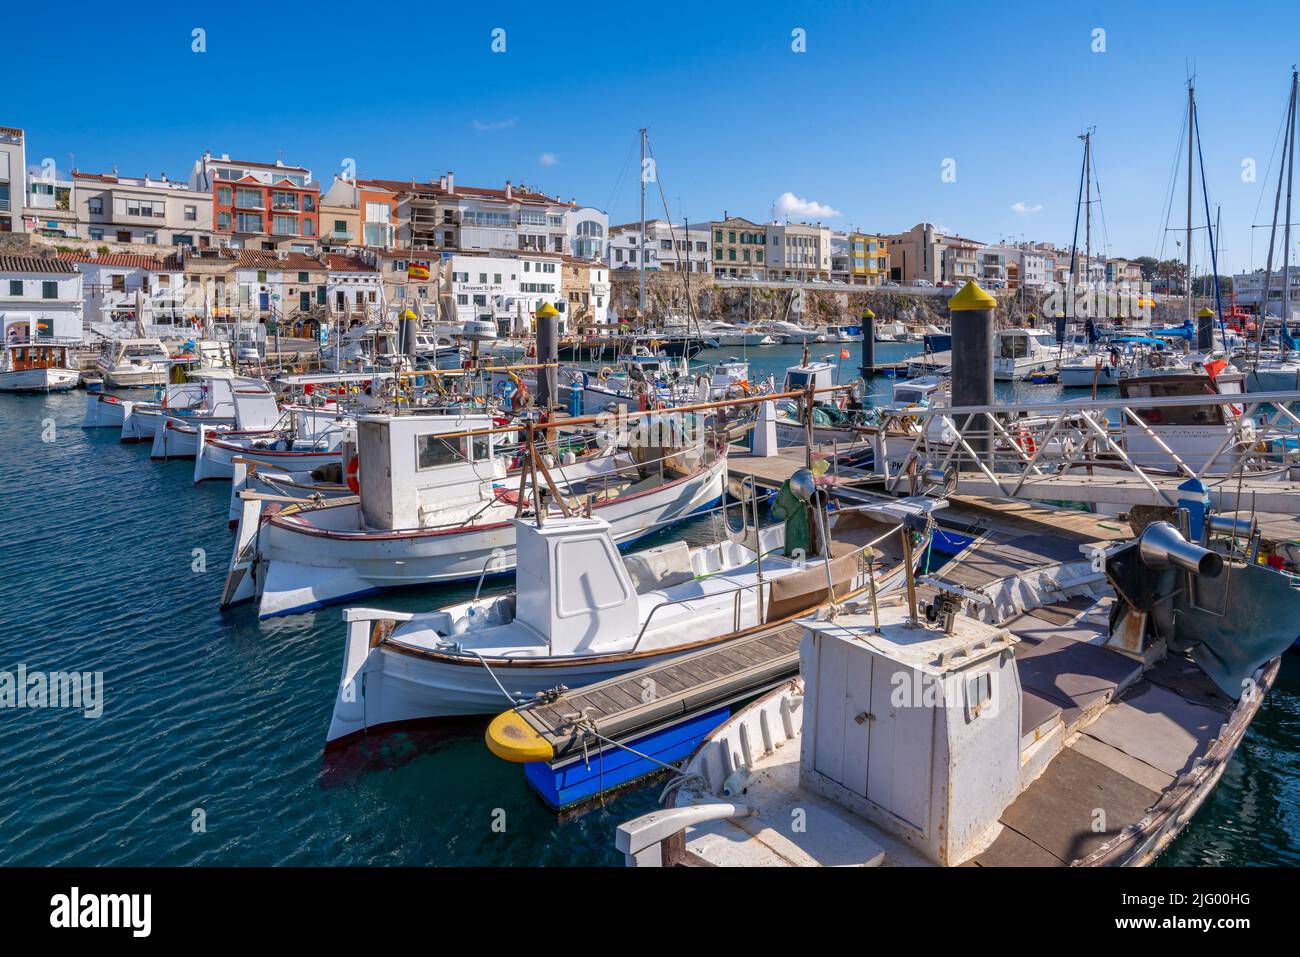 Vista de barcos en el puerto deportivo con vistas a casas encaladas, Ciutadella, Menorca, Islas Baleares, España, Mediterráneo, Europa Foto de stock